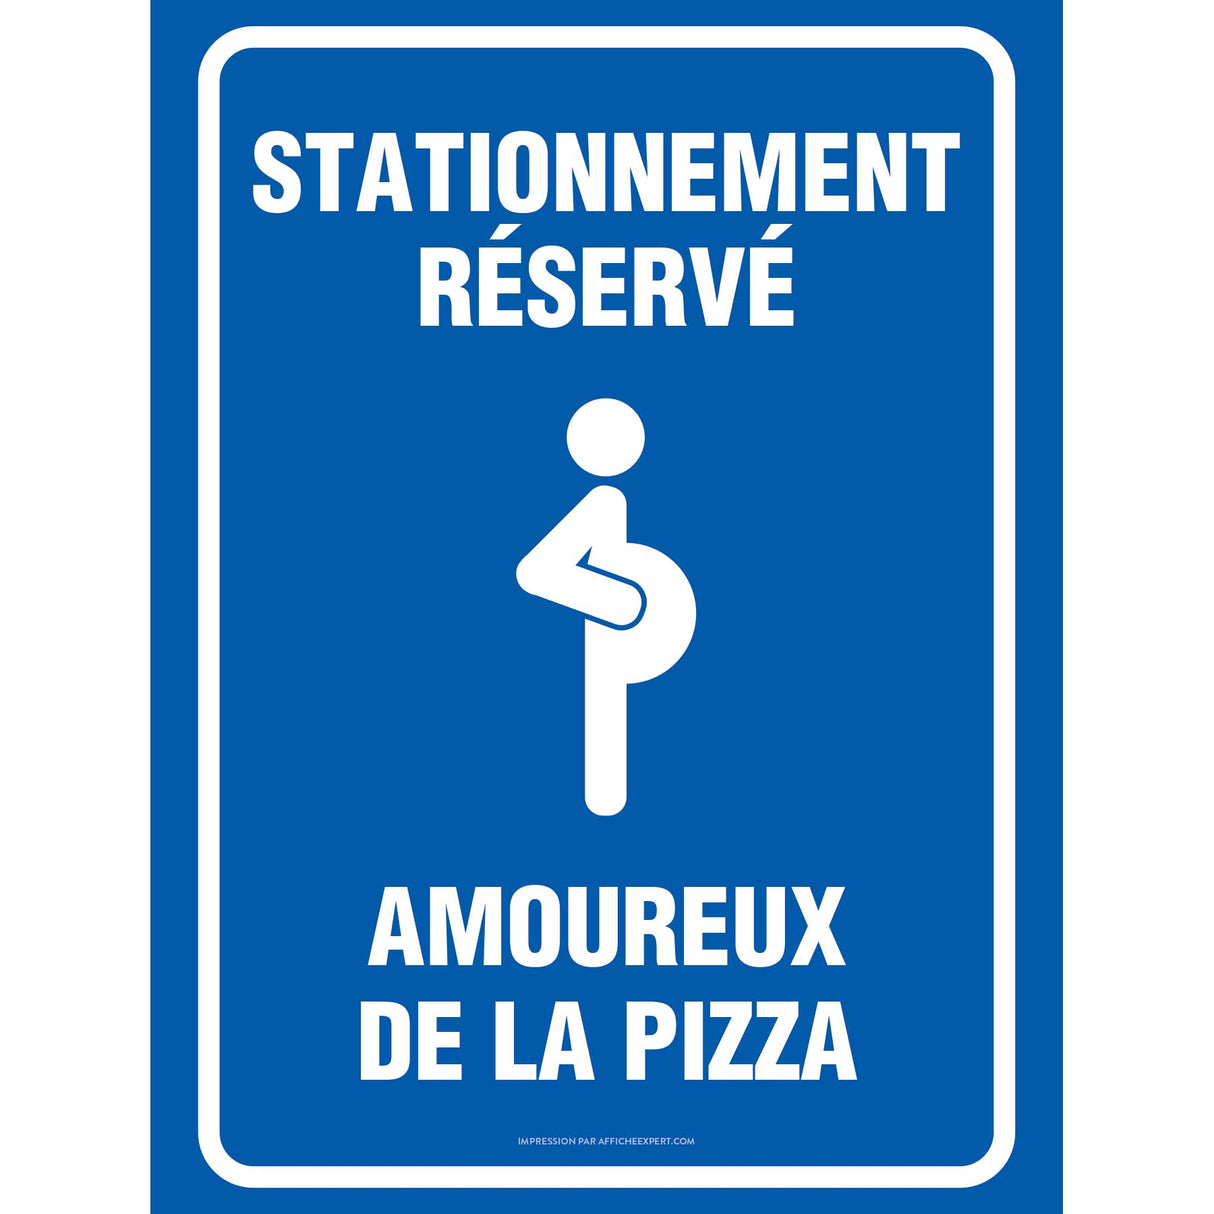 Stationnement réservé - Amoureux de la pizza